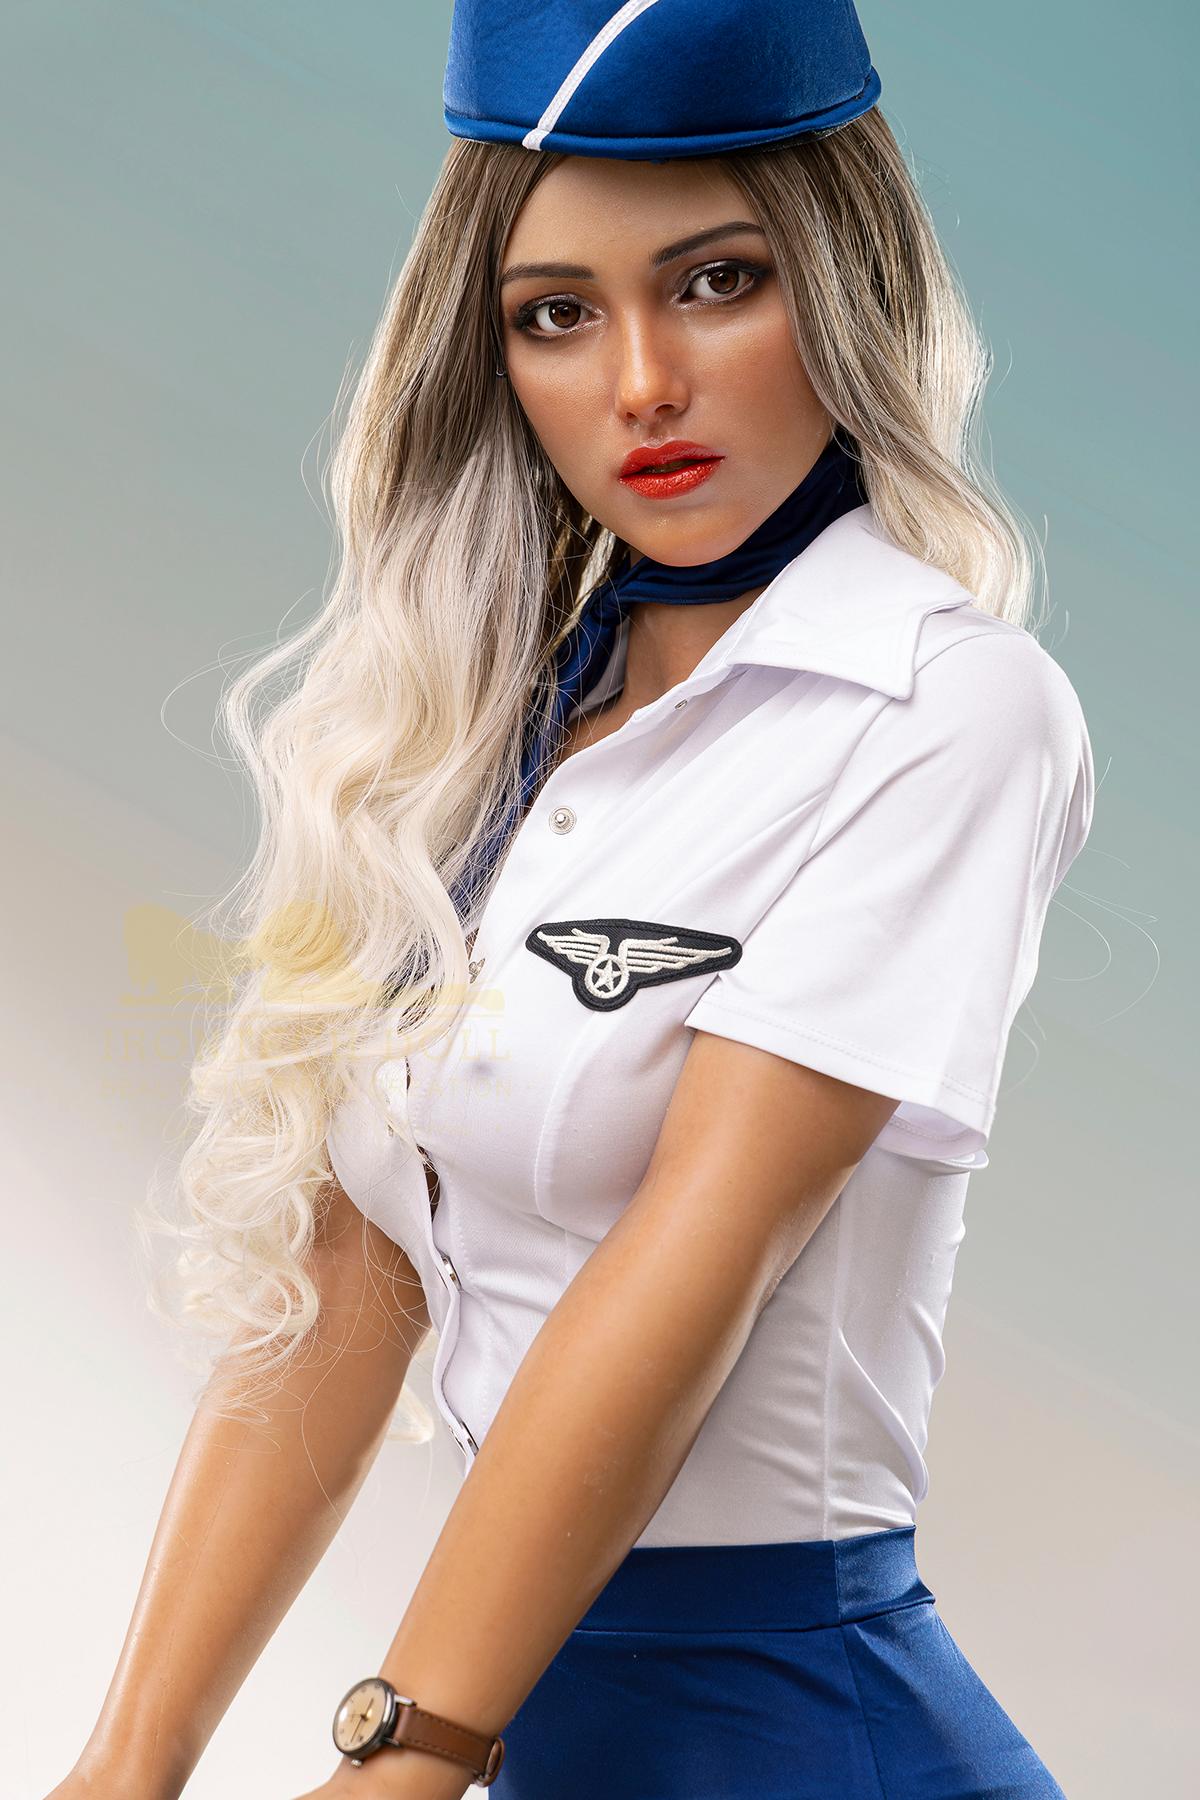 Silicone sex doll Chloé | Sexy blonde stewardess sex doll